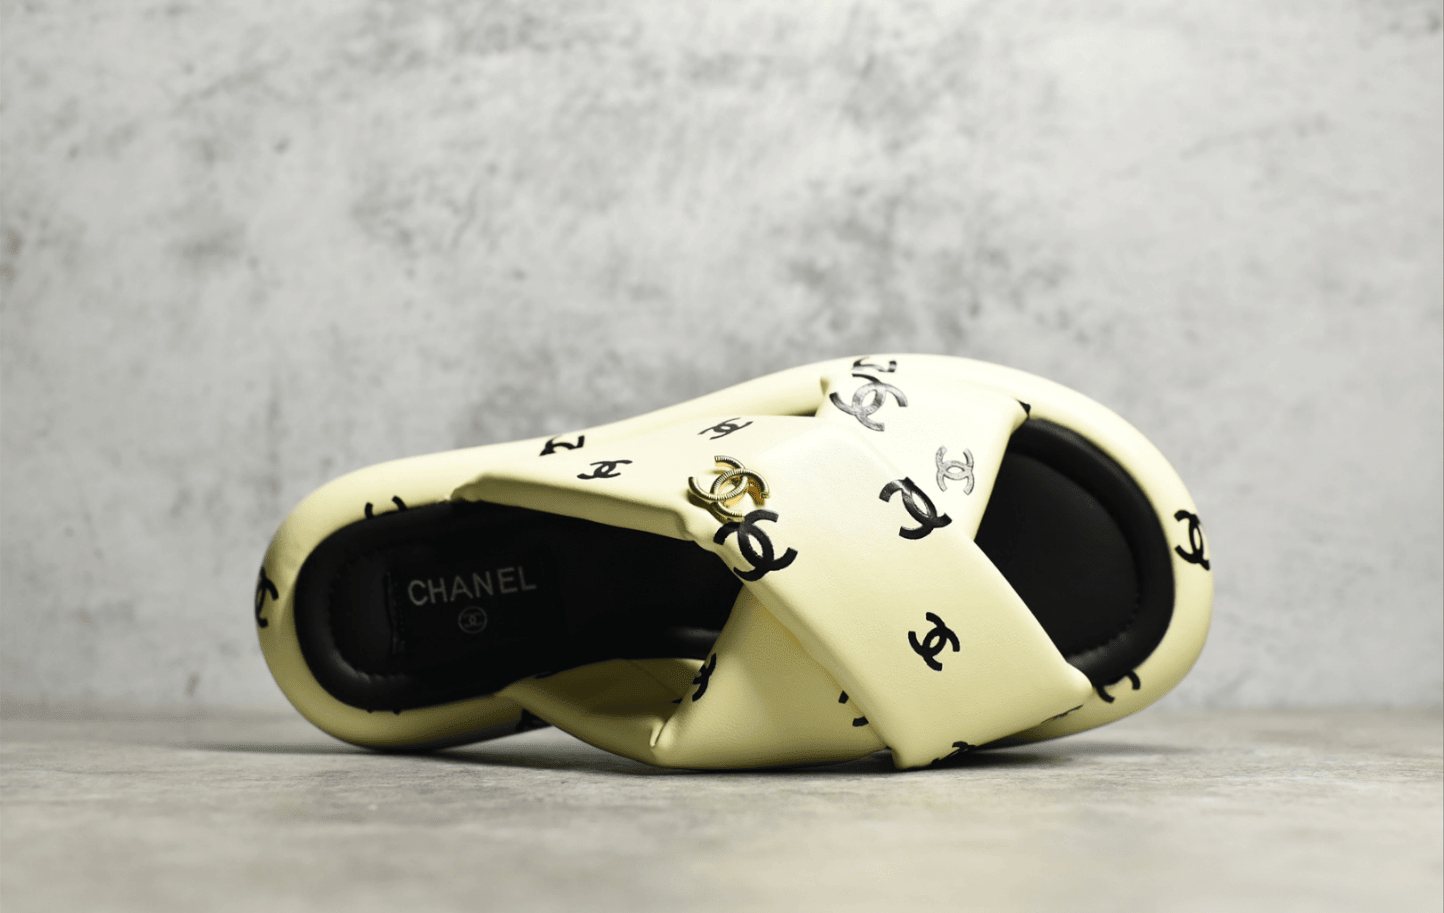 广东货源香奈儿新款拖鞋代购级别版本 Chanel 香奈儿面包凉拖鞋 香奈儿代工厂